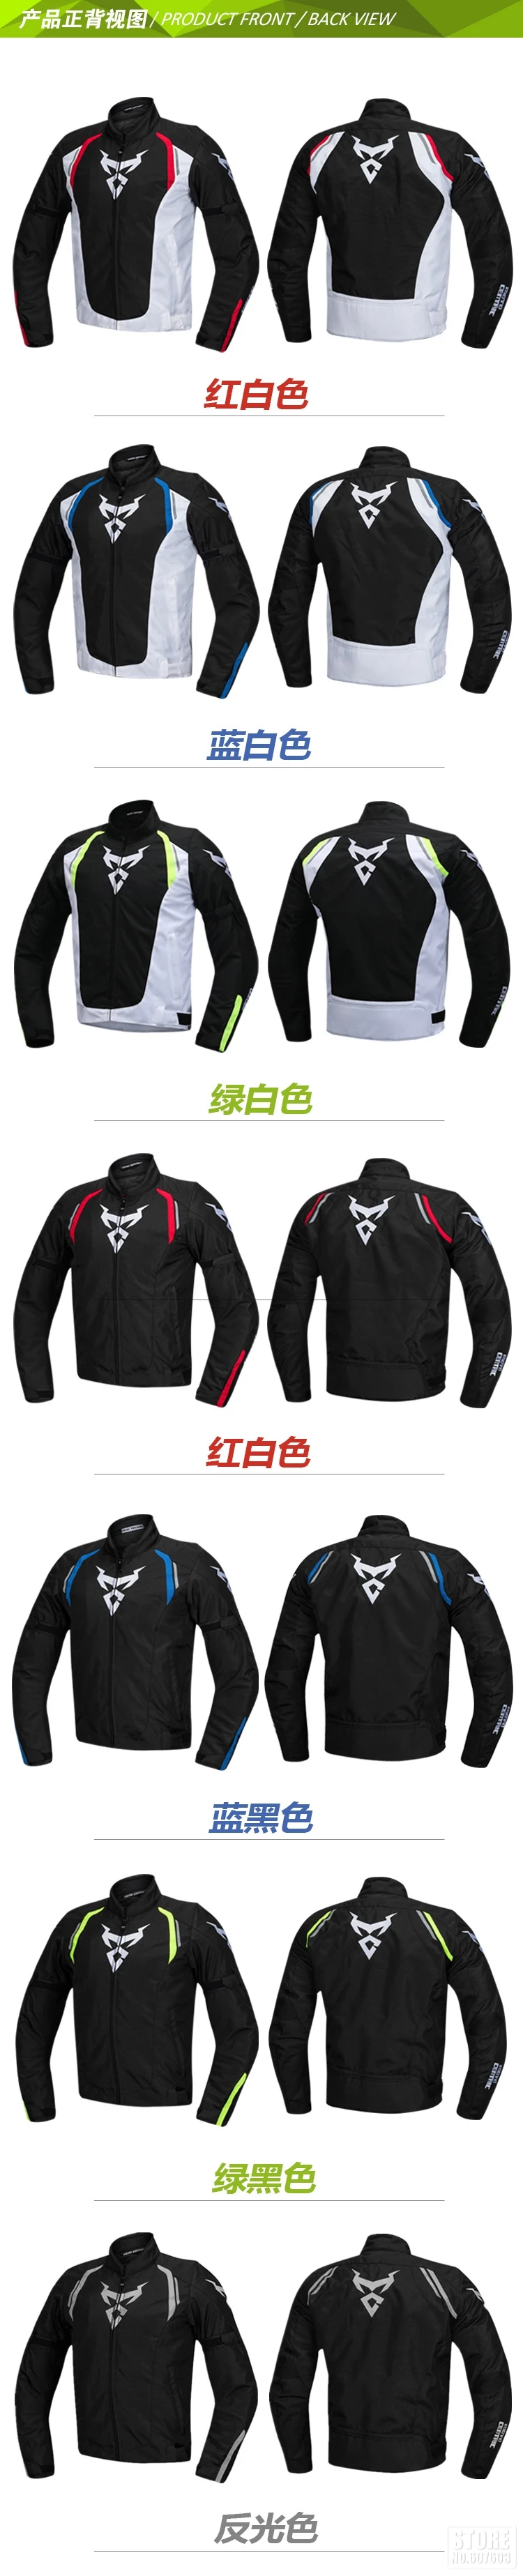 Motocentric новая мотоциклетная дышащая куртка для верховой езды гоночная куртка для мотоспорта куртка для мотокросса защита мотоцикла